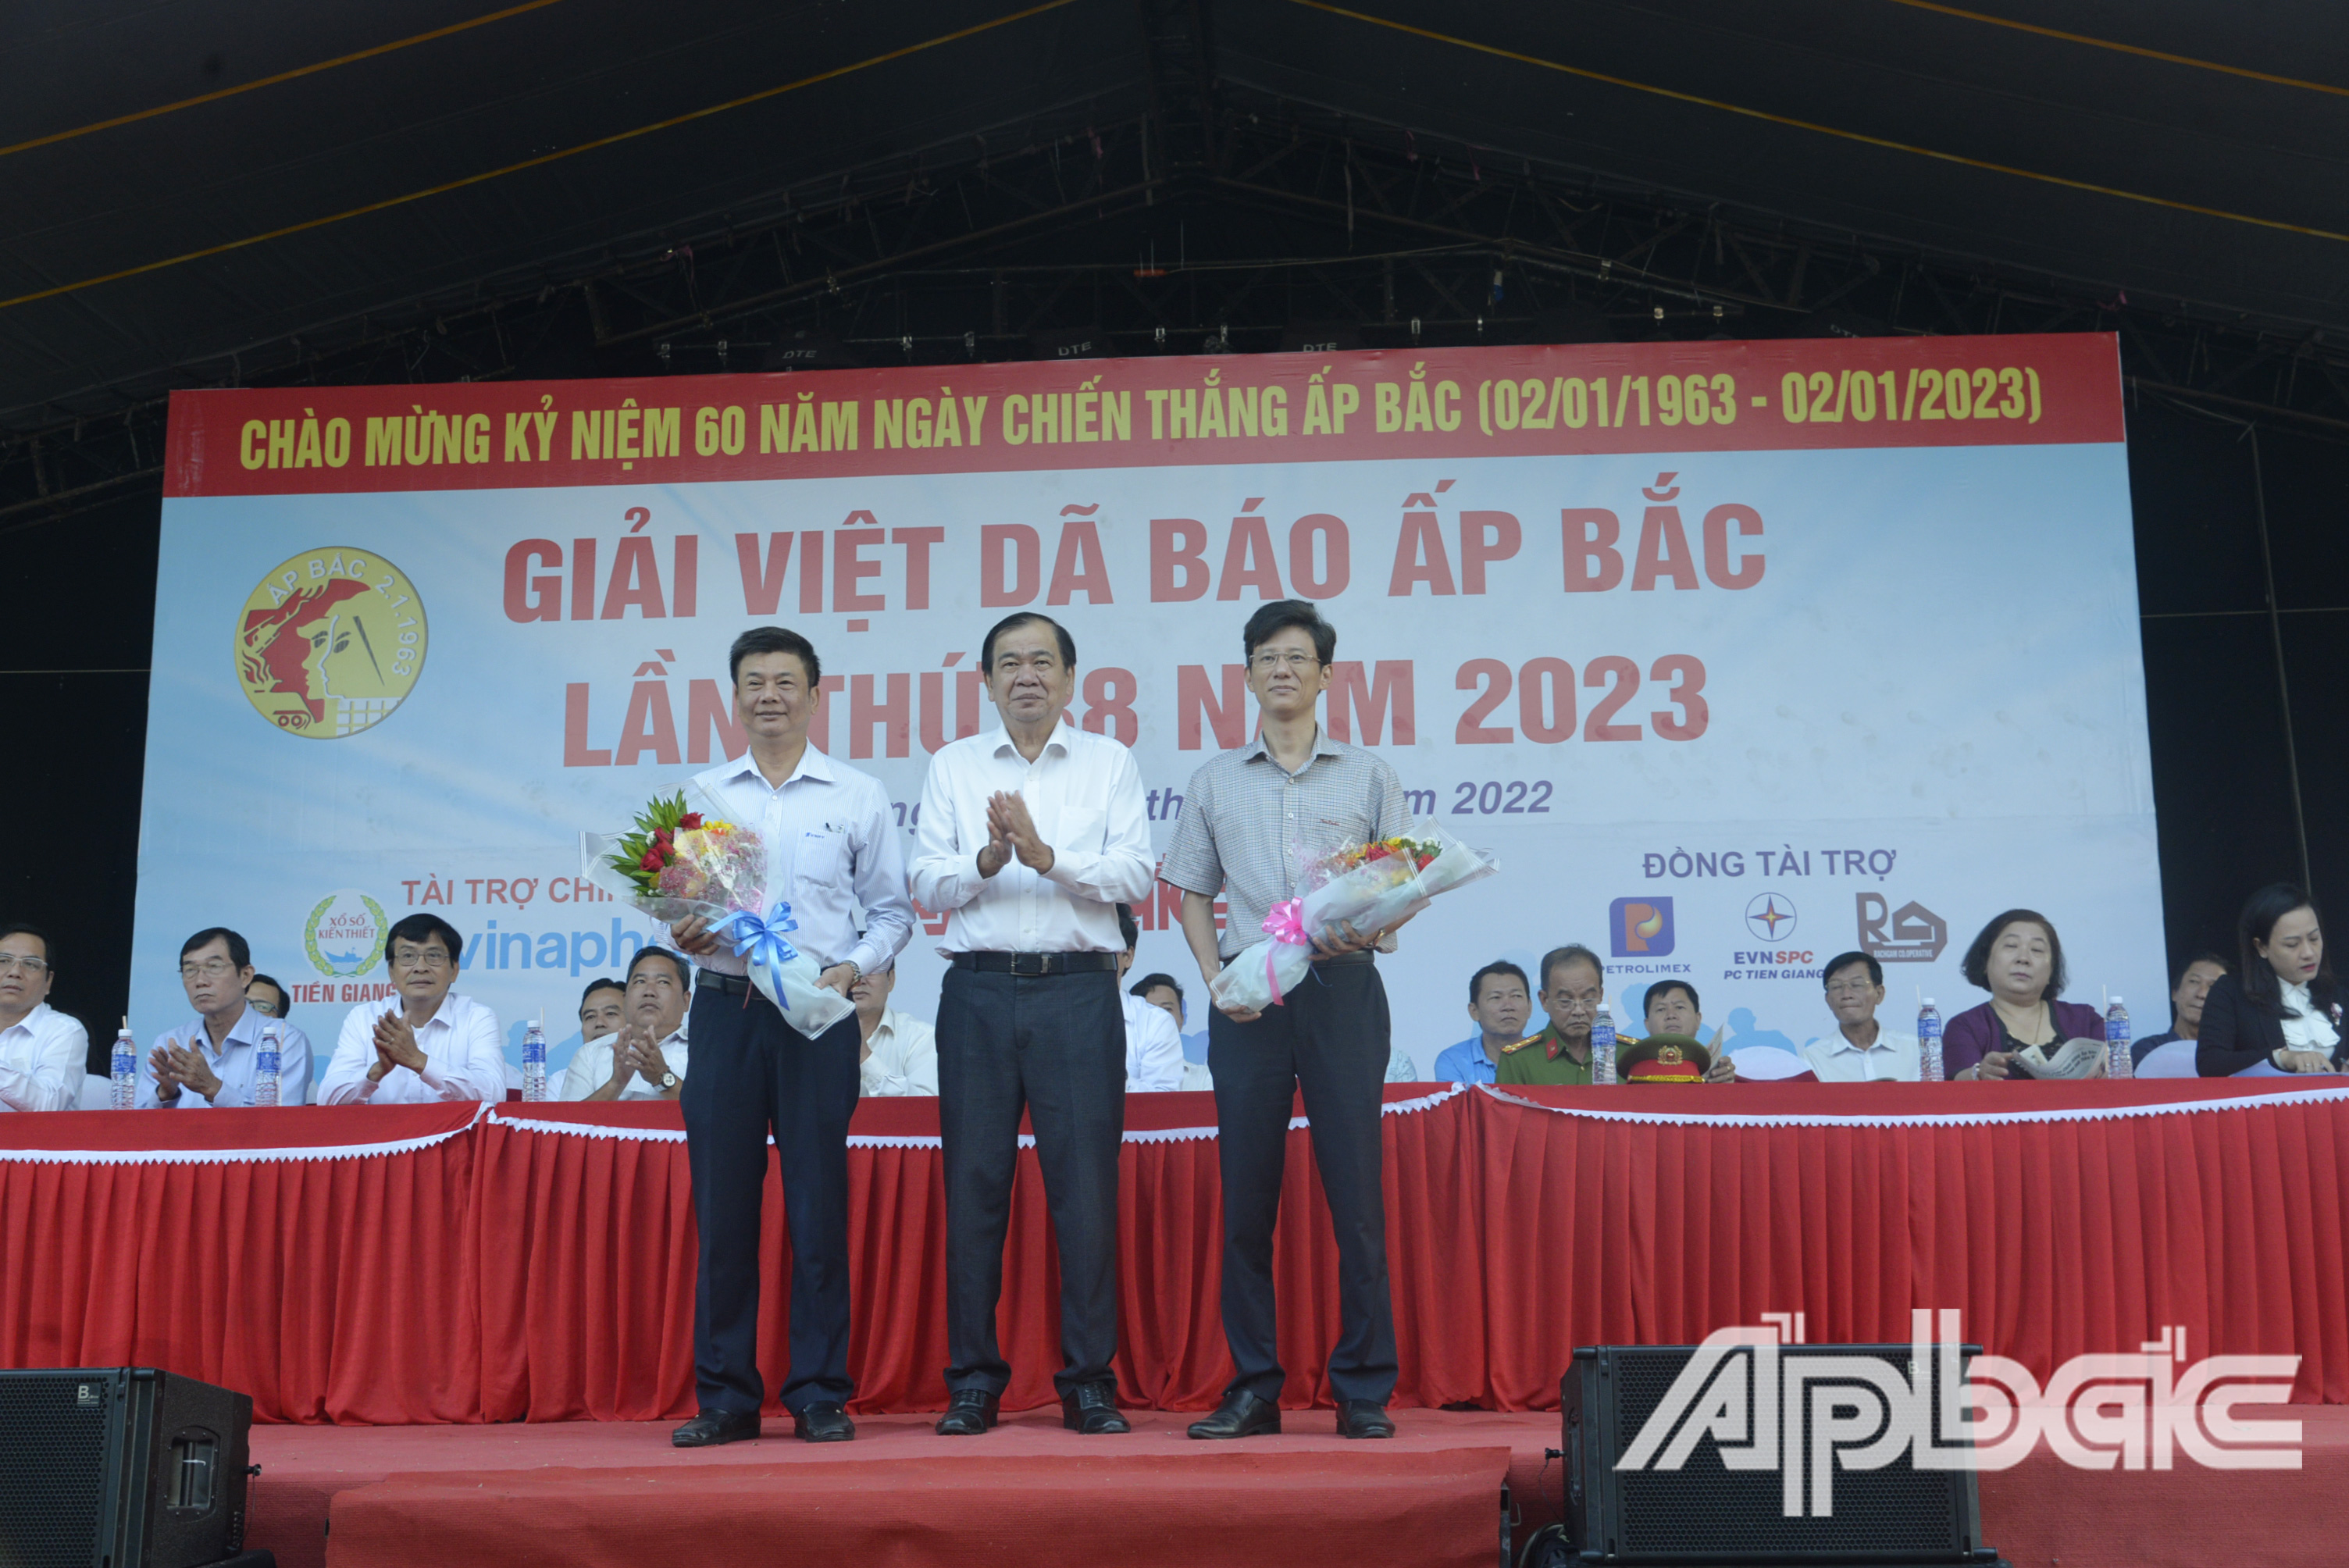 Đồng chí Nguyễn Minh Tân, Tổng Biên tập Báo Ấp Bắc trao tặng cho các nhà tài trợ Giải.